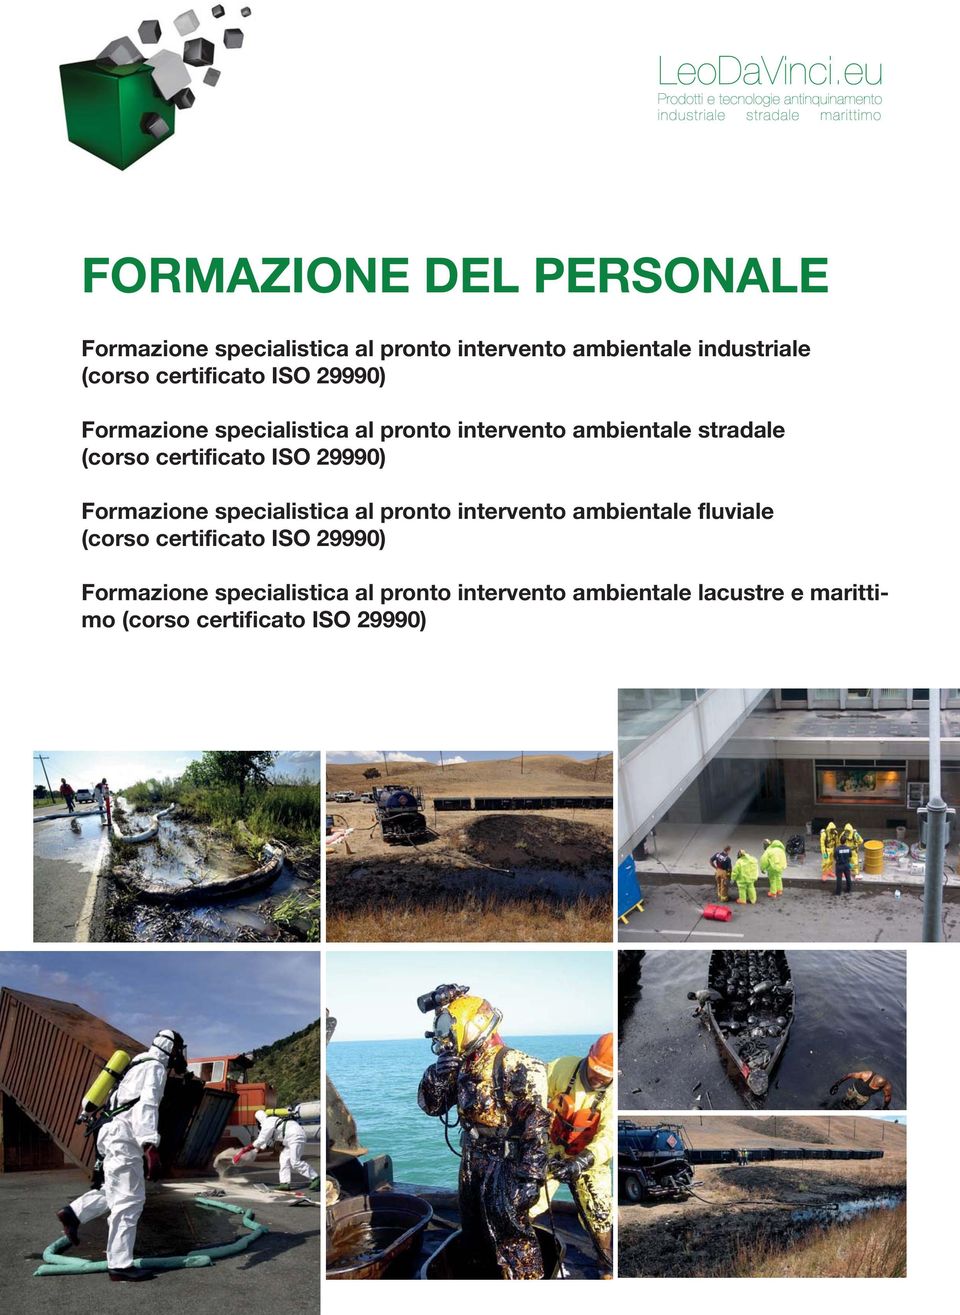 certificato ISO 29990) Formazione specialistica al pronto intervento ambientale fluviale (corso